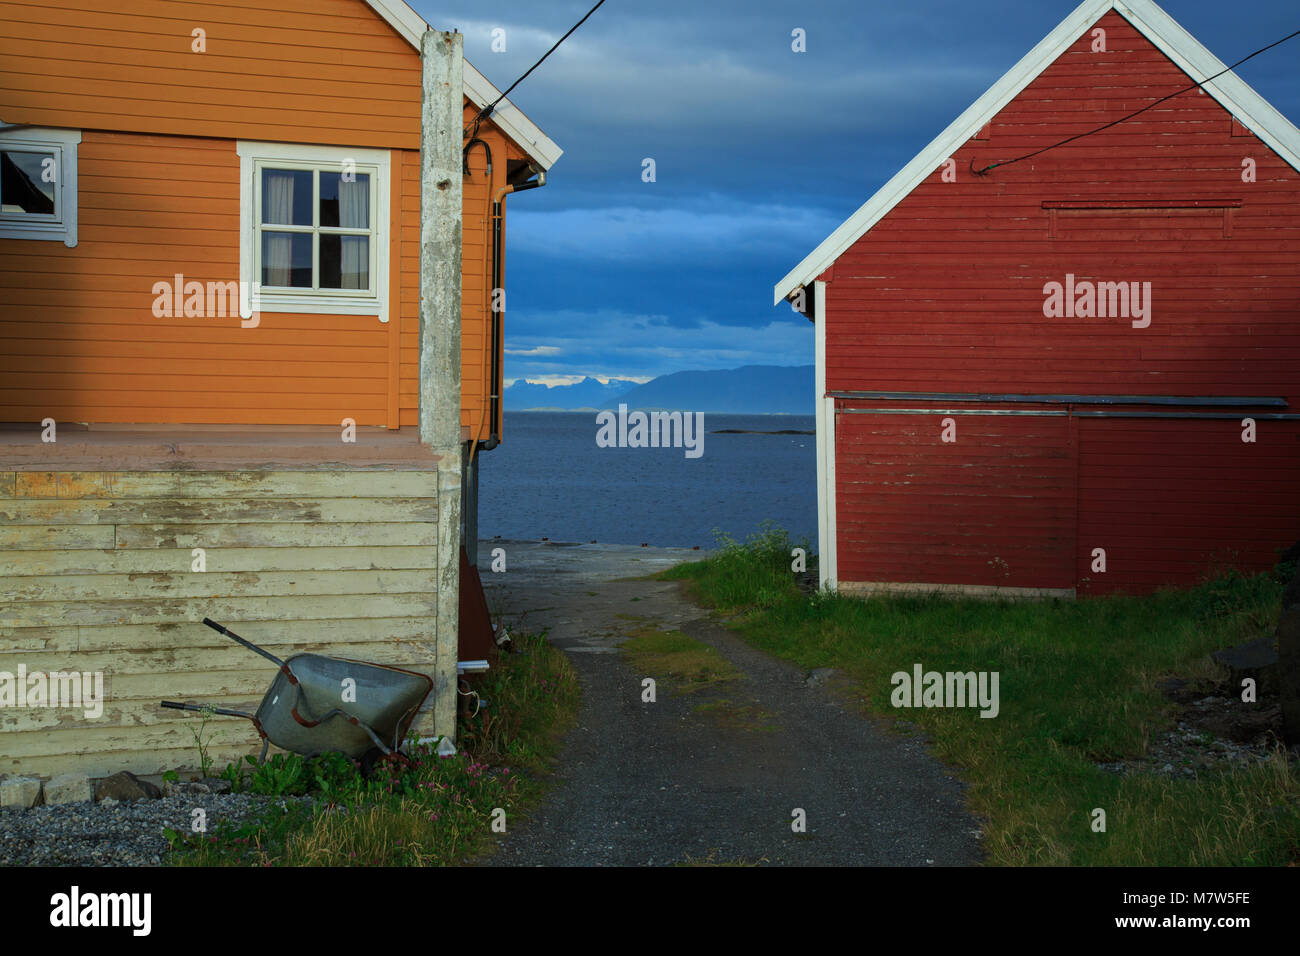 Maison en bois rouge et orange par la côte de l'île de la Norvège avec l'AIIO étrange nuage sombre Banque D'Images